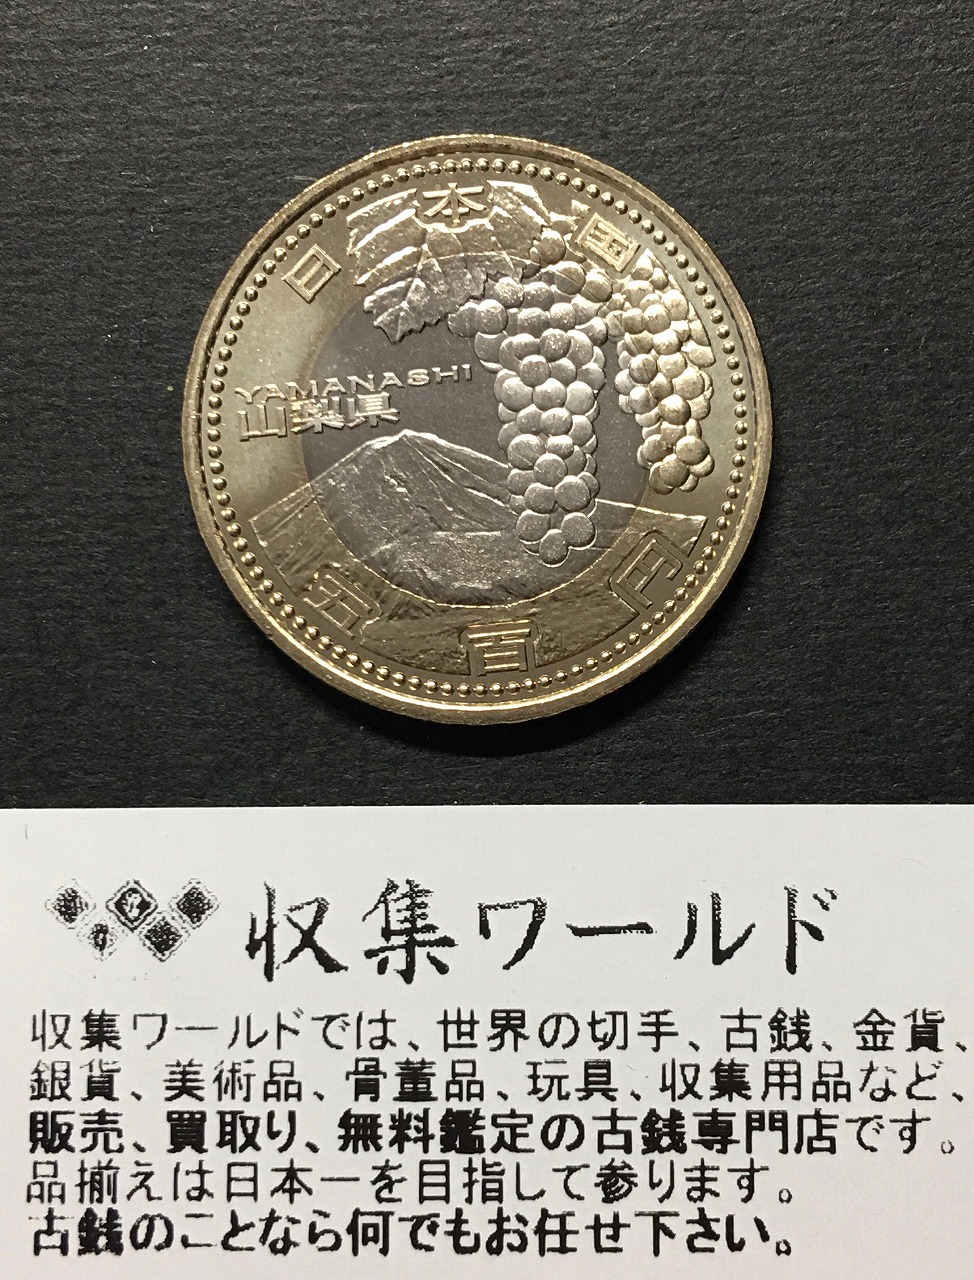 タイププルーフ硬貨1986 ディスカバリー号 500周年記念 50クラウン プルーフ銀貨